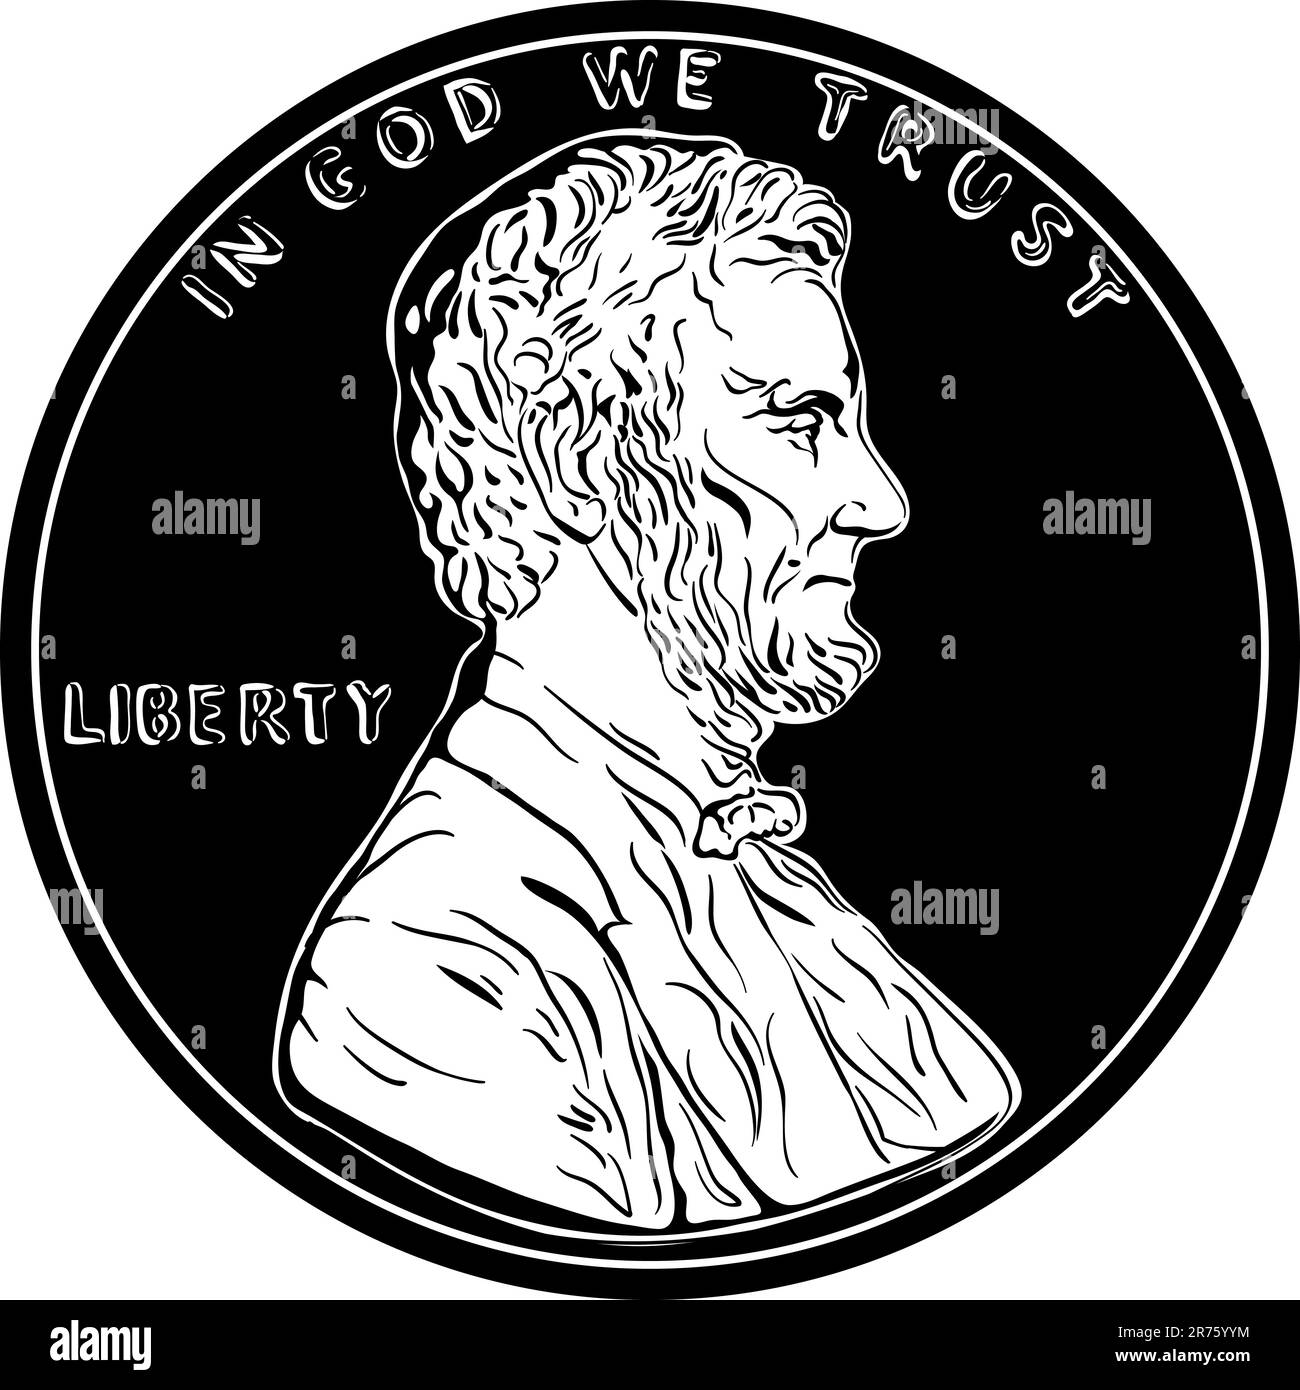 Amerikanisches Geld, Vereinigte Staaten ein Cent oder Penny, Präsident Lincoln auf der Vorderseite. Schwarzweiß-Bild Stock Vektor